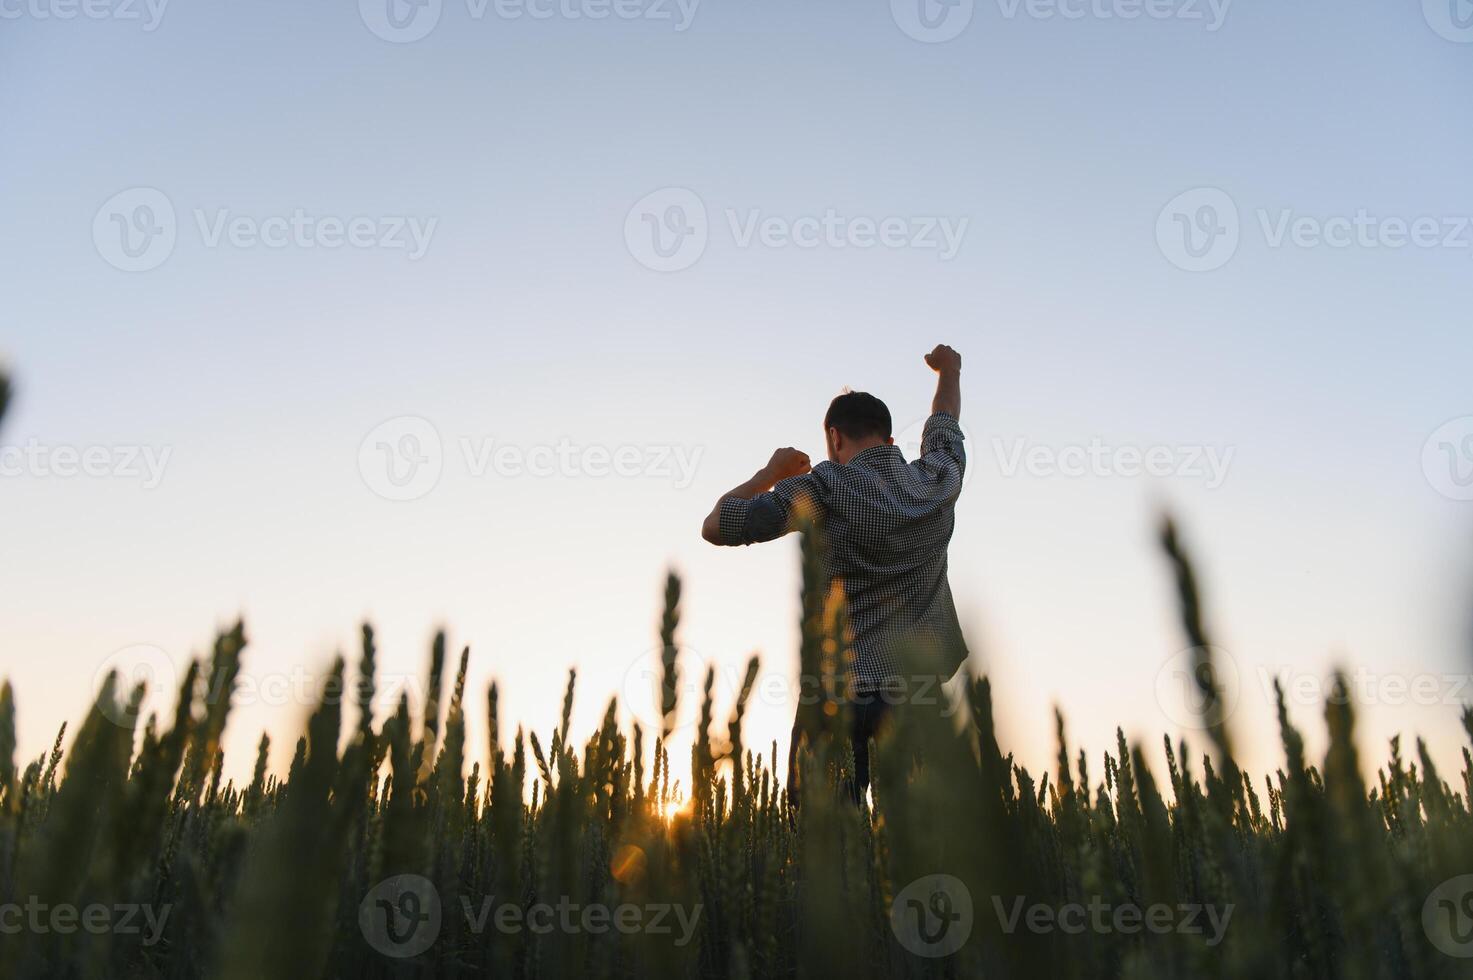 nascer do sol ou pôr do sol cenário do cara com elevado mãos olhando às Sol e desfrutando dia. adulto homem ficar de pé sozinho dentro meio do maduro trigo campo. agricultor ou agrícola cara foto